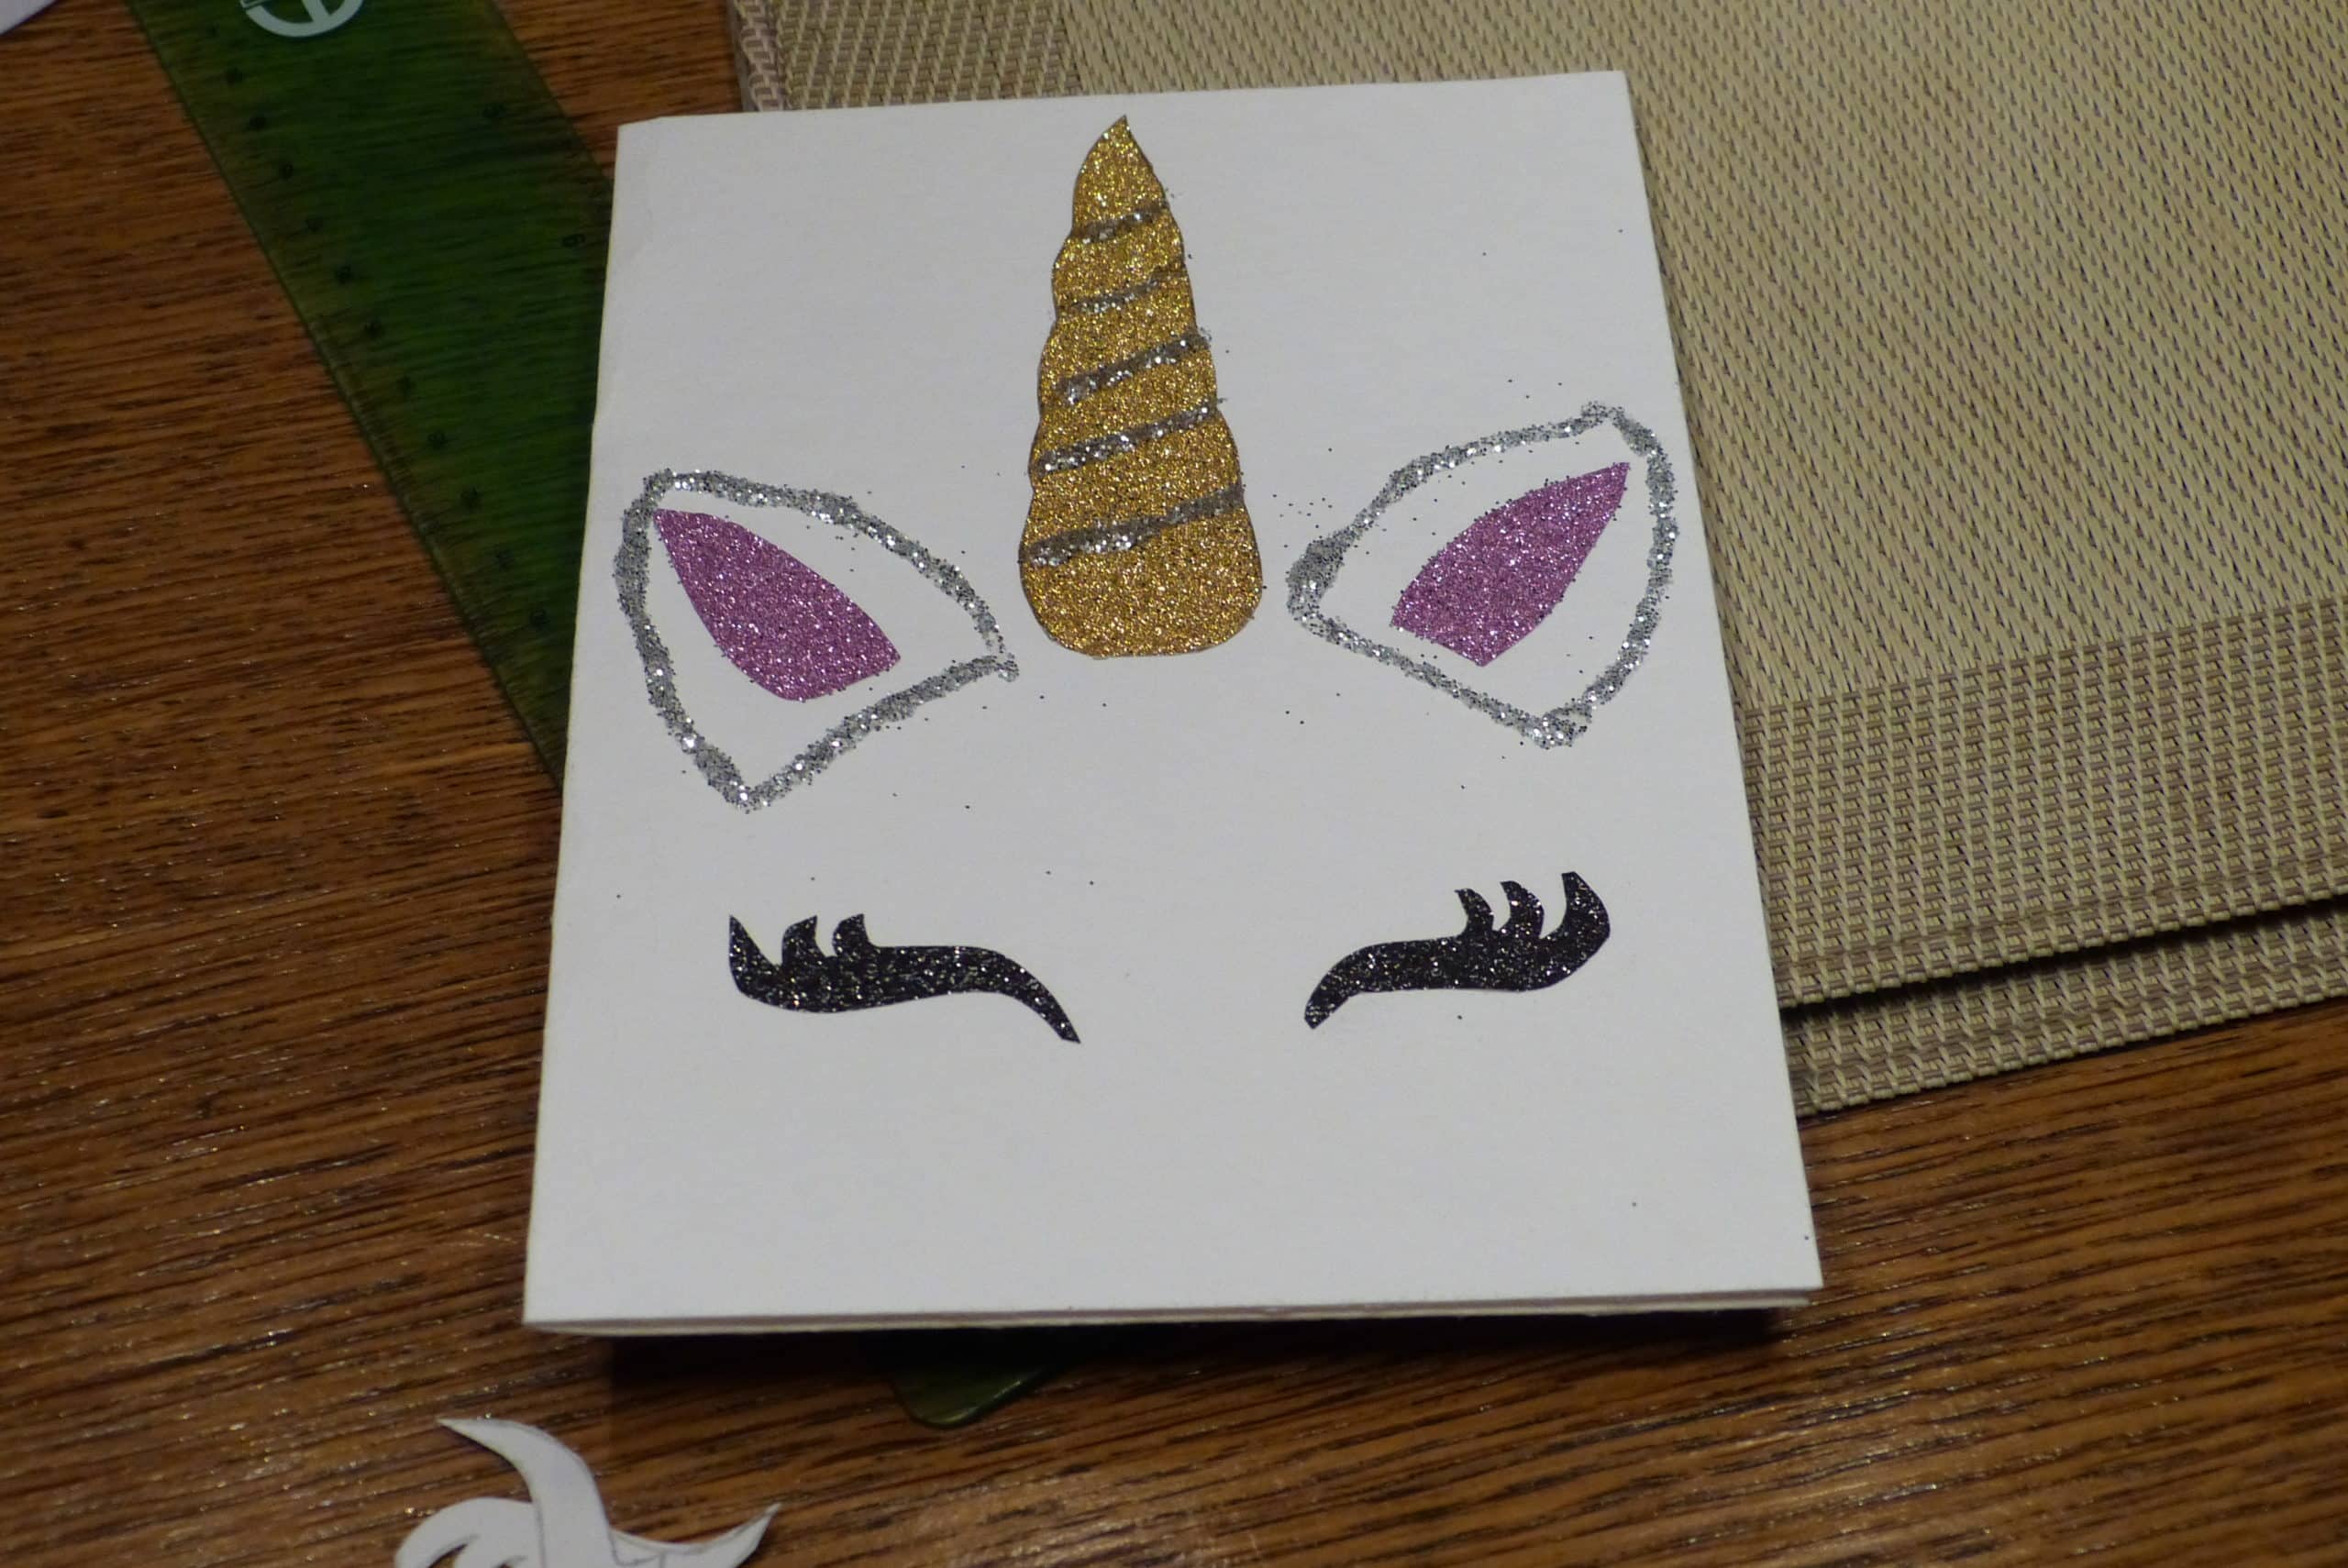 Eine kreative Einhorn-Einladung mit einem zauberhaften Einhorn-Kopf aus Glitzerpapier, verziert mit Glitzer-Ohrmuscheln und funkelnden Wimpern.